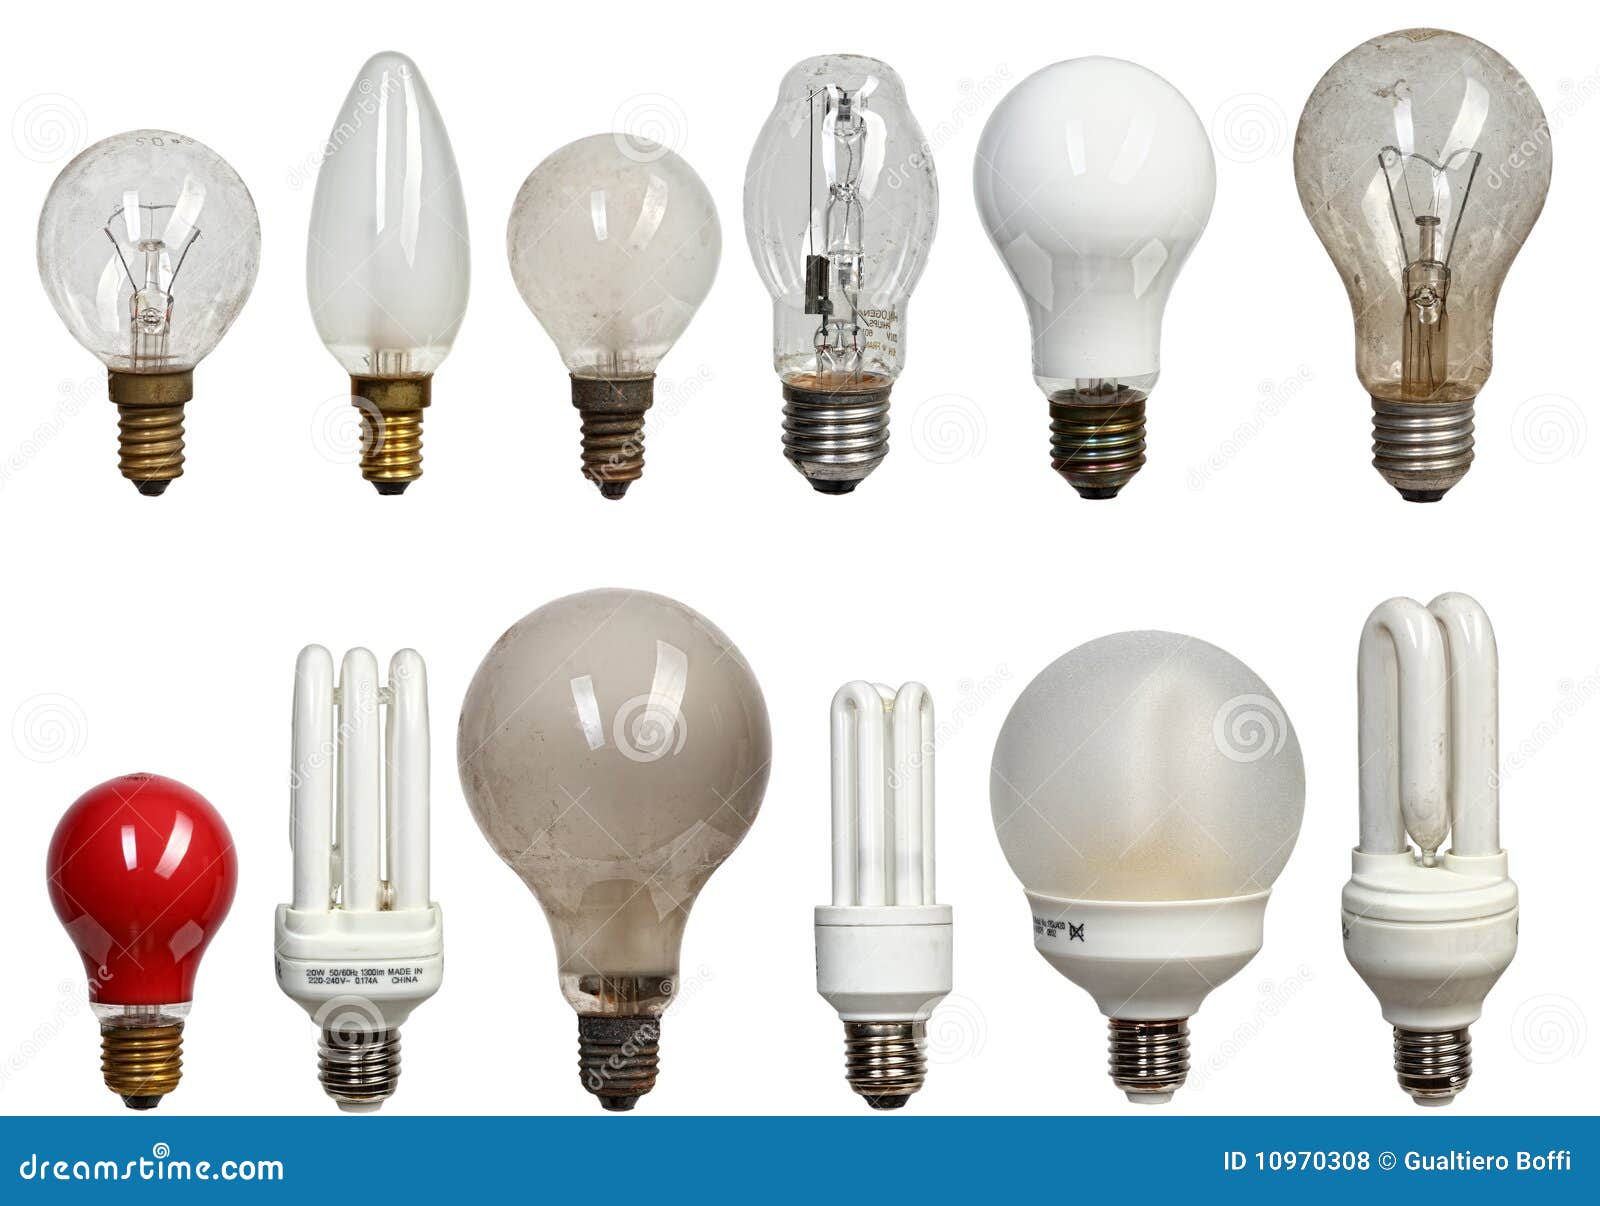 Качество света лампы накаливания. Осветительные приборы (лампы светодиодные led) 18 WMF. Электрическая лампа. Современная лампа накаливания. Формы лампочек накаливания.